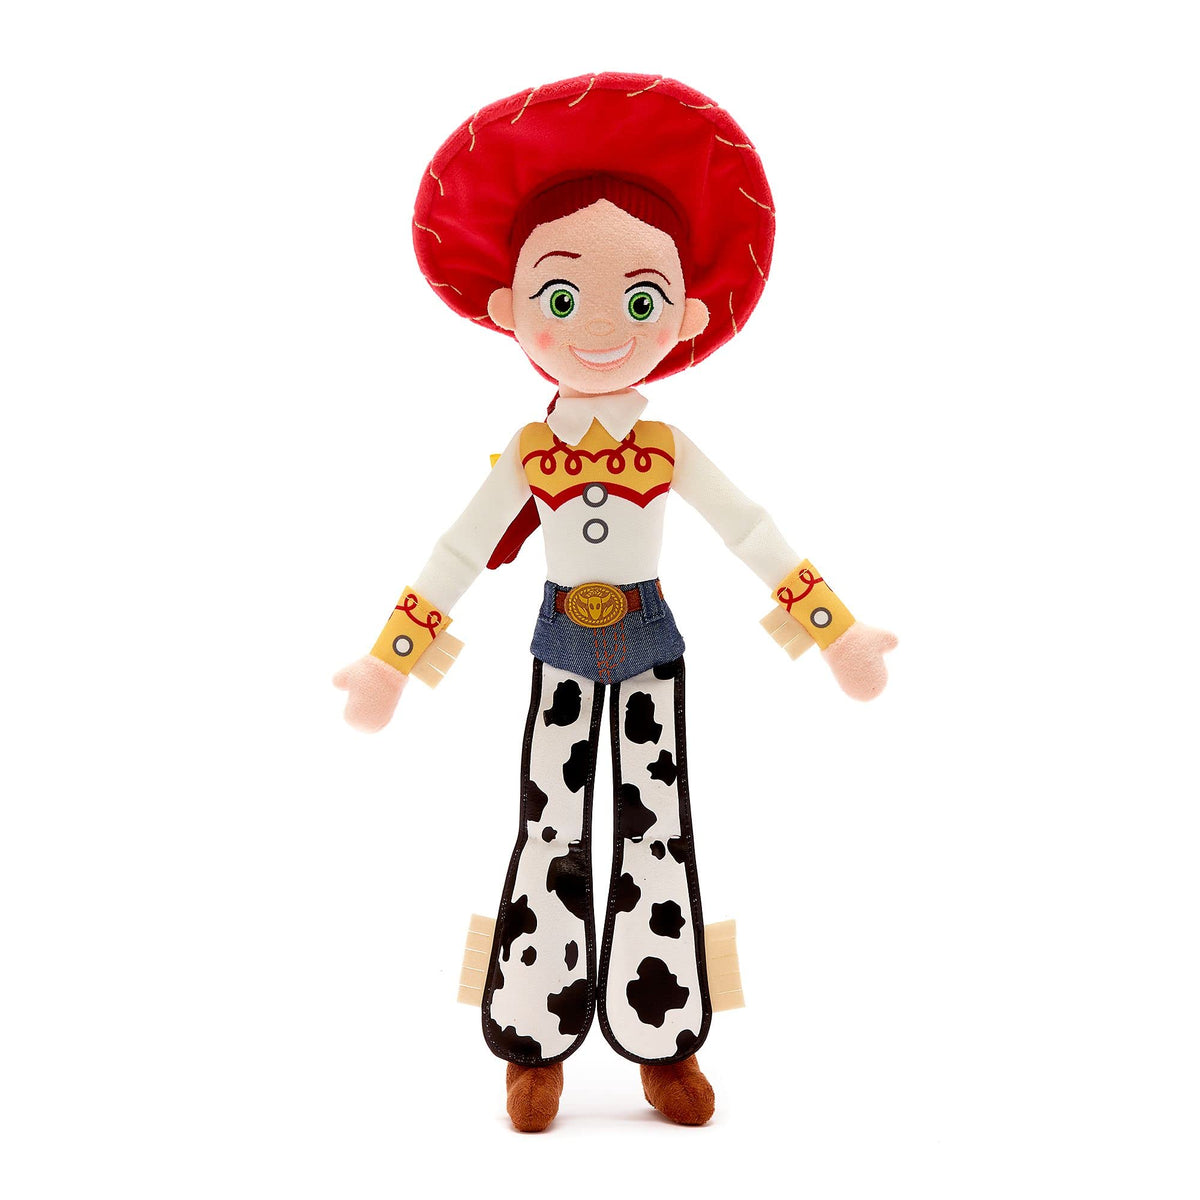 Disney Store Official Jessie Medium Soft Toy, Toy Story, 45cm/17ÃƒÆ’Ã†â€™Ãƒâ€šÃ‚Â¢ÃƒÆ’Ã‚Â¢ÃƒÂ¢Ã¢â€šÂ¬Ã…Â¡Ãƒâ€šÃ‚Â¬ÃƒÆ’Ã¢â‚¬Å¡Ãƒâ€šÃ‚Â, Plush Cuddly Character, Yodelling Cowgirl Standing, with Embroidered Details and Soft Feel Finish